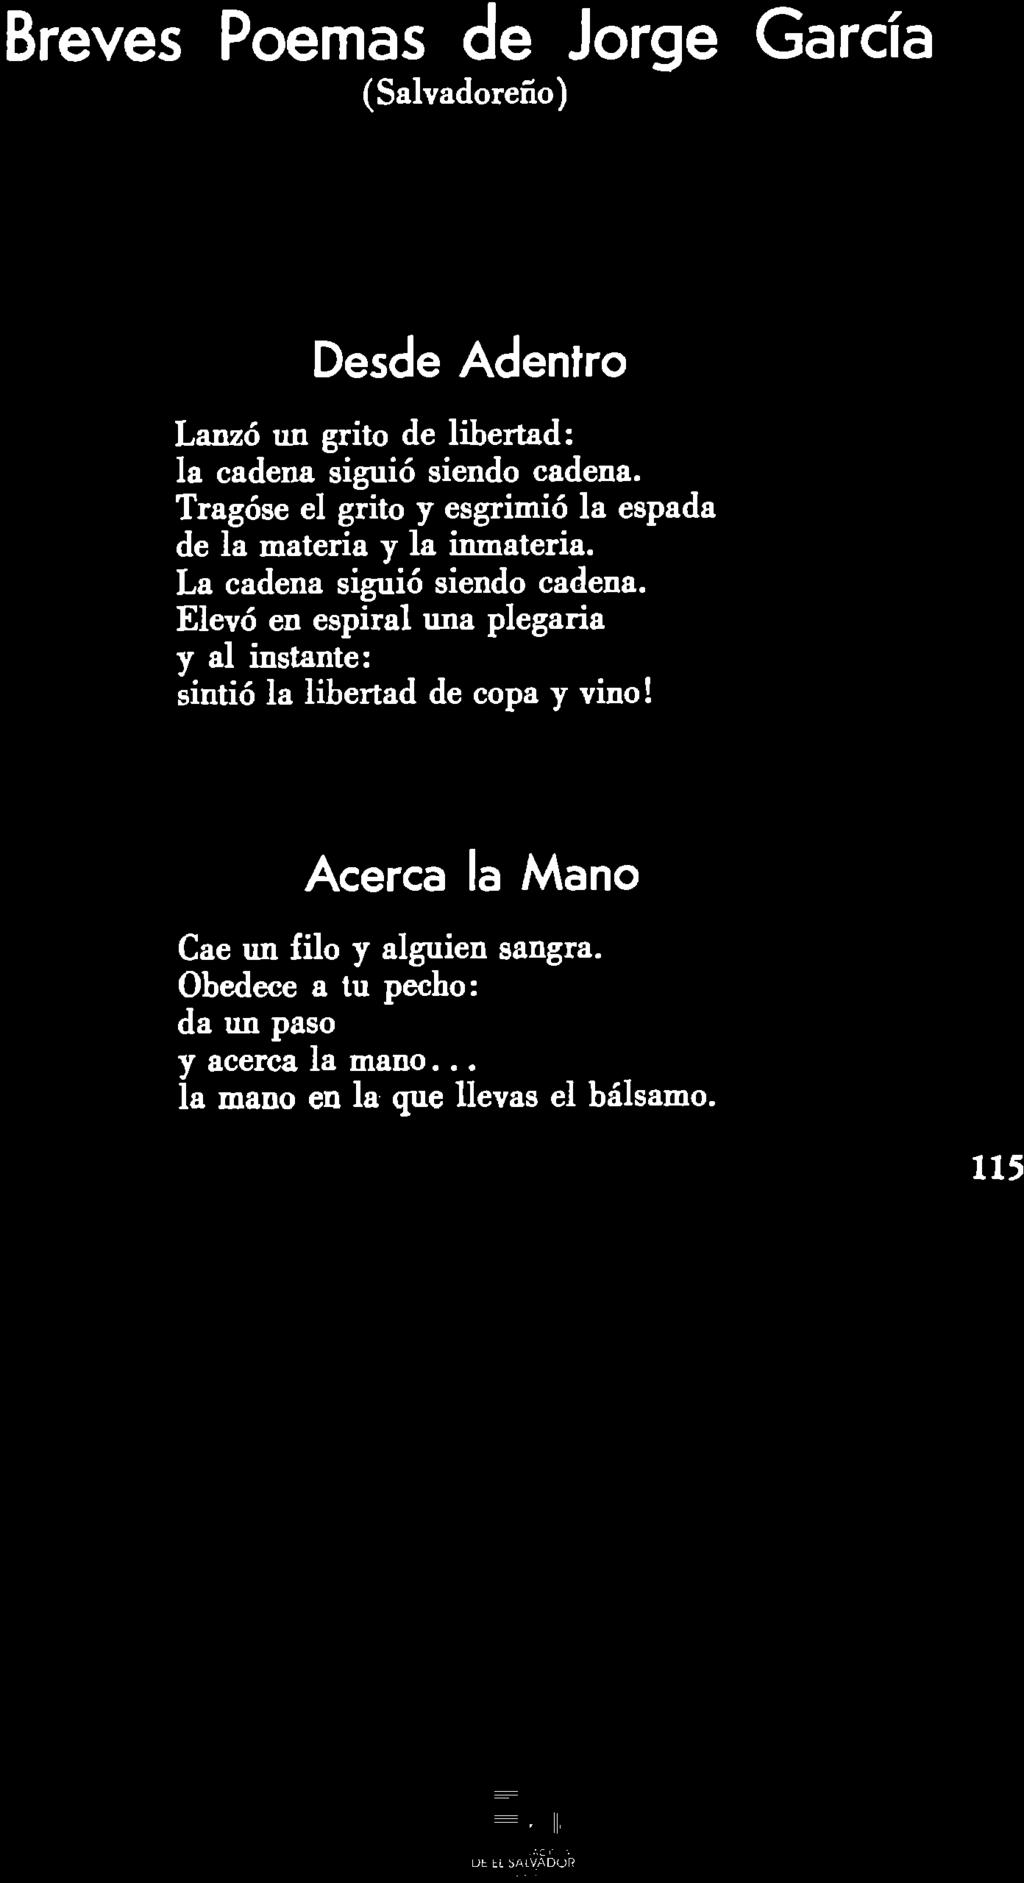 Breves Poemas de Jorge Garcia (Salvadoreno) Desde Adentro Lanzo un grito de libertad: la cadena siguio siendo cadena. Tragose el grito y esgrimio la espada de la materia y la inmateria.